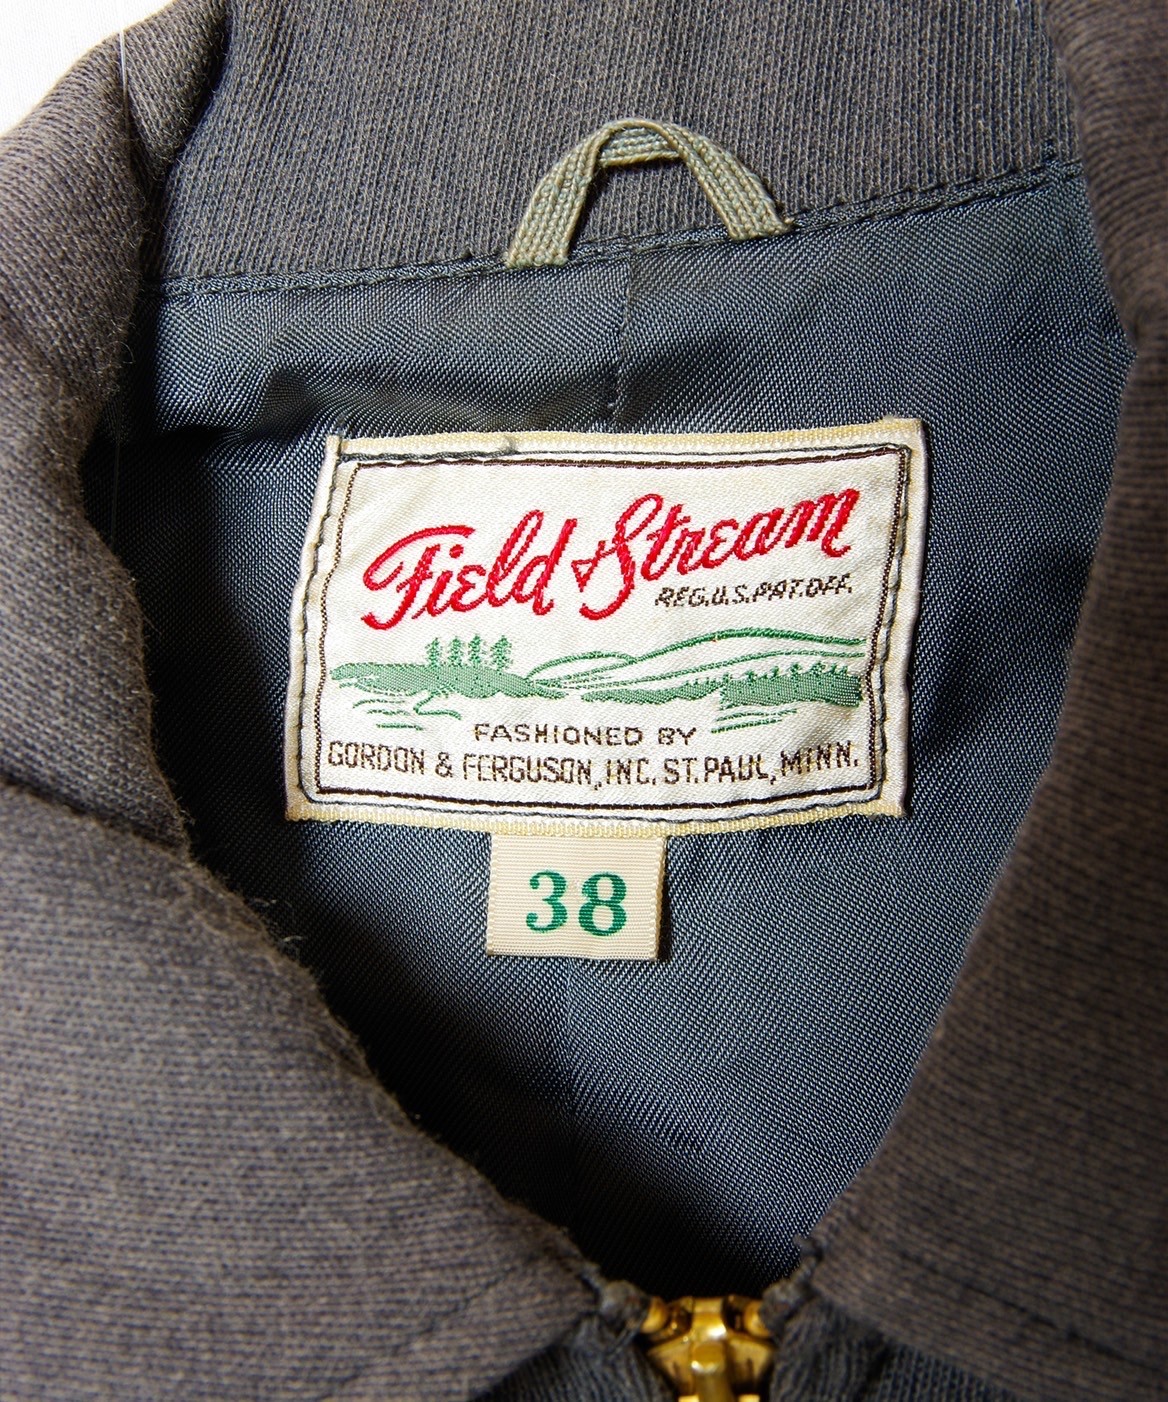 Vintage Wool Gabardine Jacket